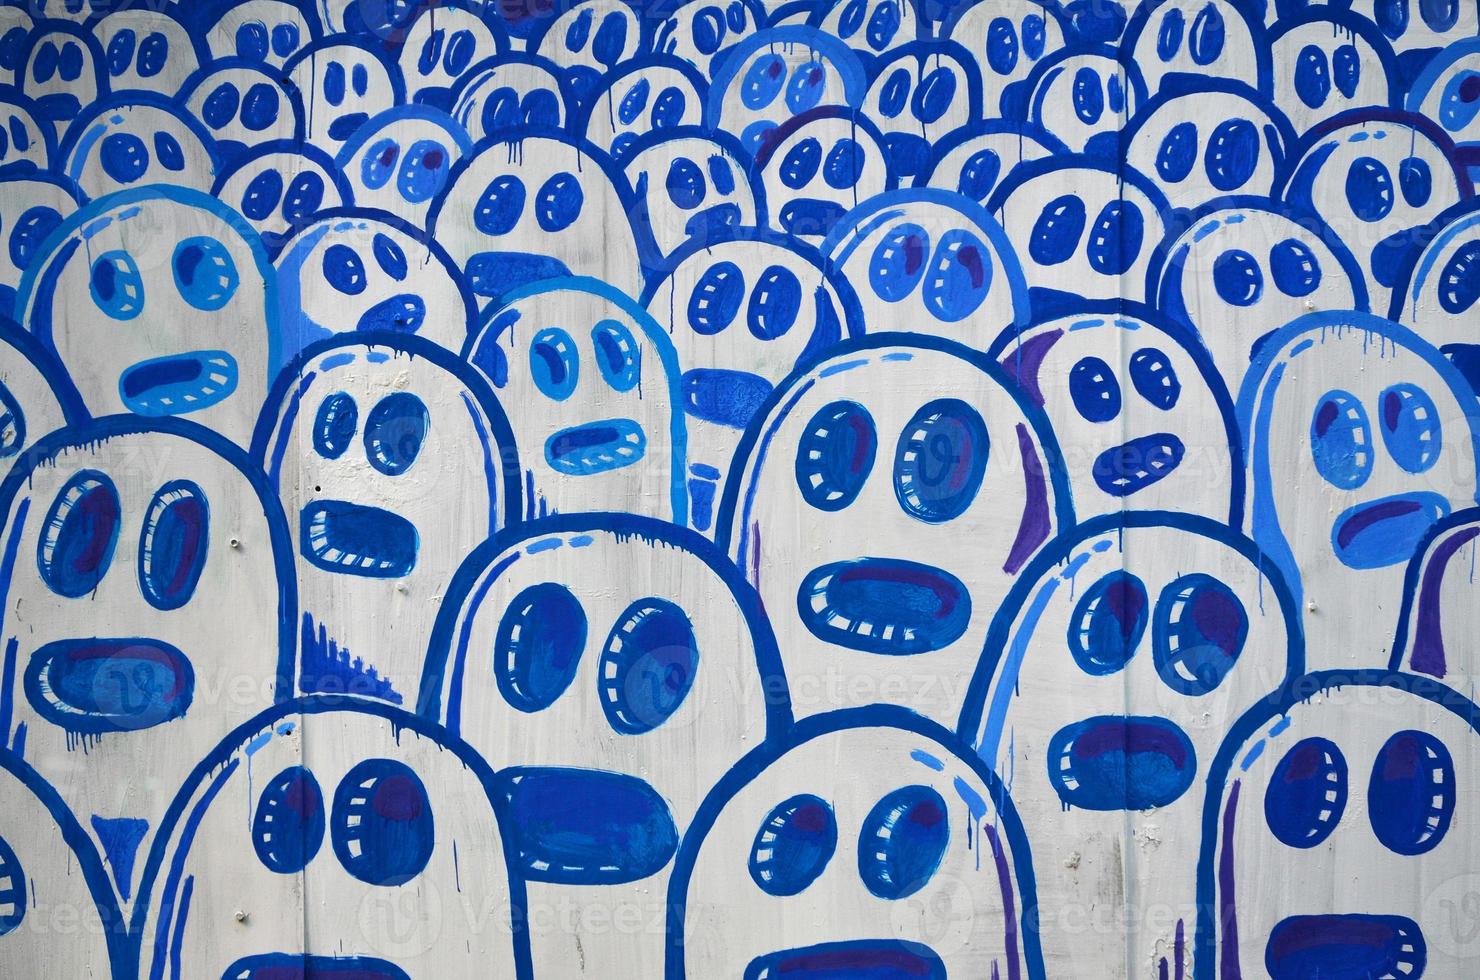 die alte Mauer, gemalt in Graffiti-Farbzeichnung mit Aerosolfarben. das Bild einer Reihe identischer Cartoon-Gesichter. das Konzept einer geistlosen Masse foto